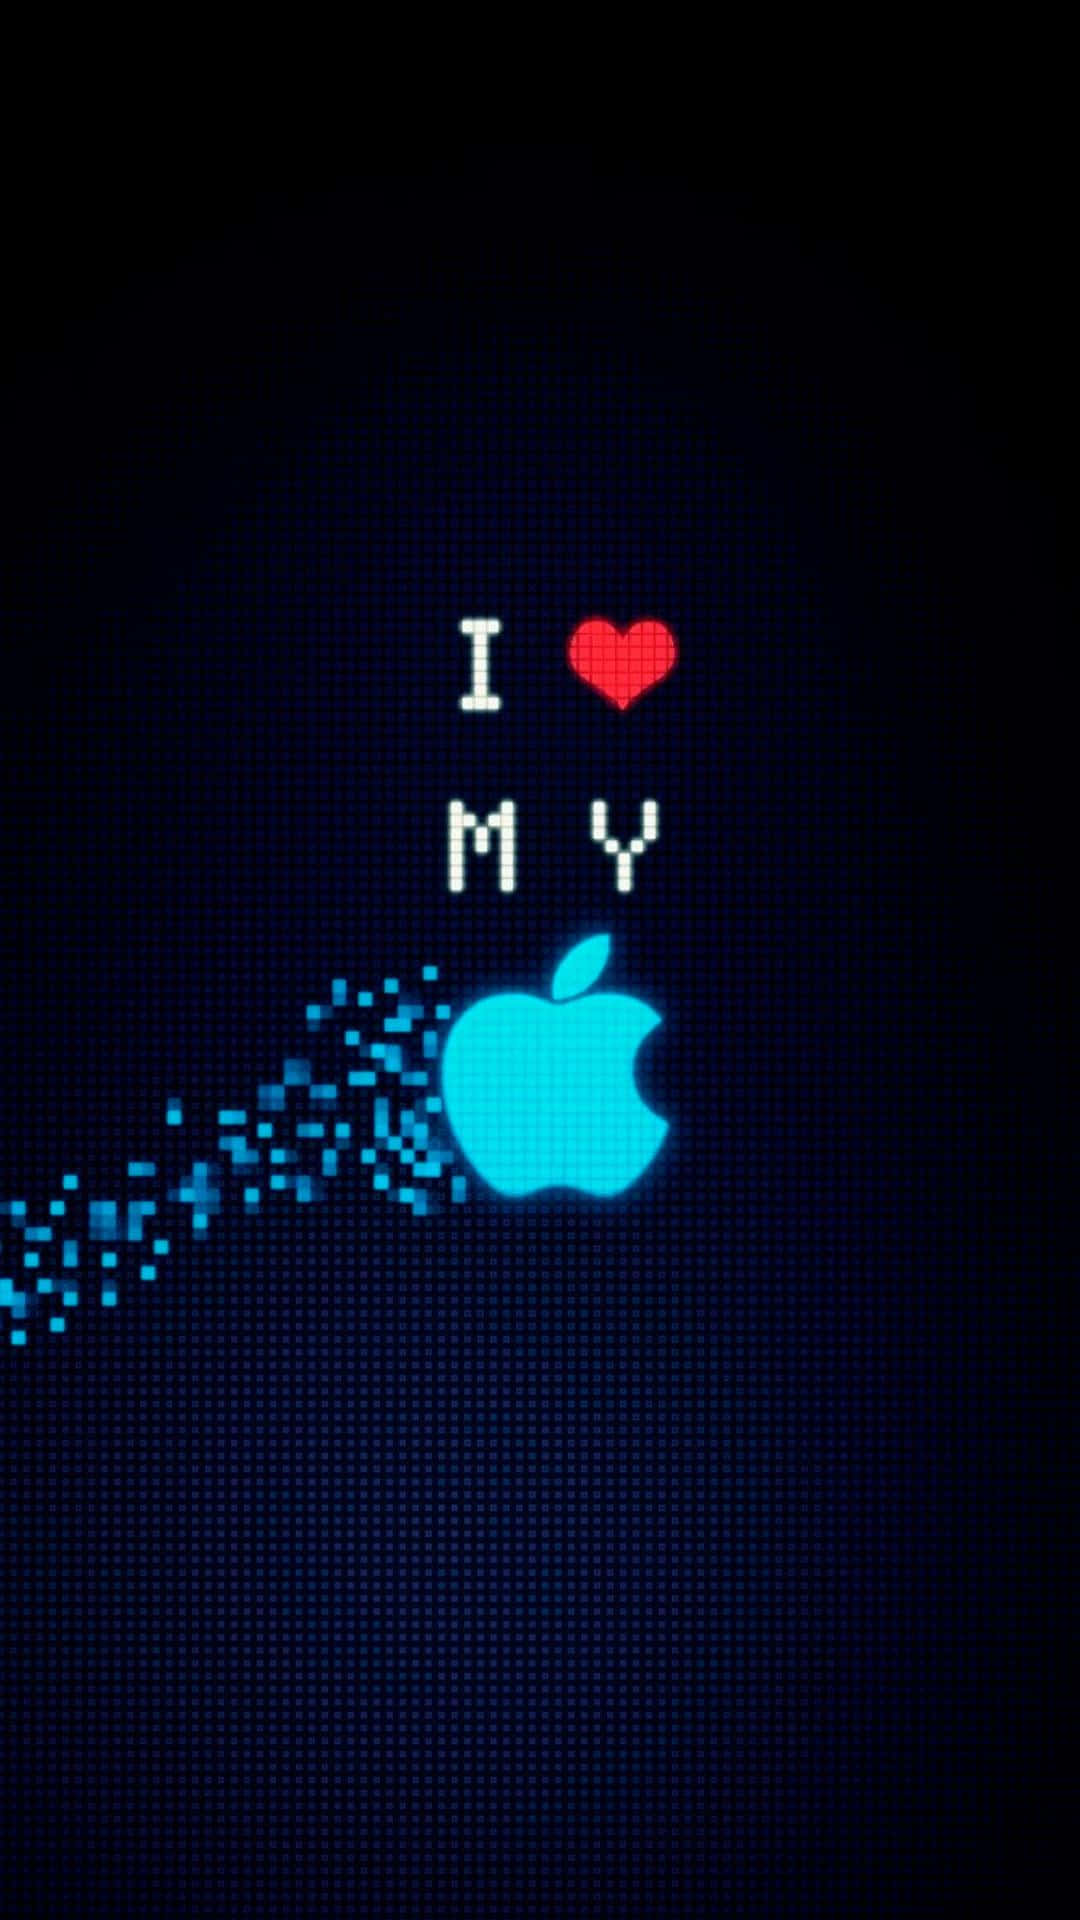 Oicônico Logotipo Da Apple No Iphone X. Papel de Parede